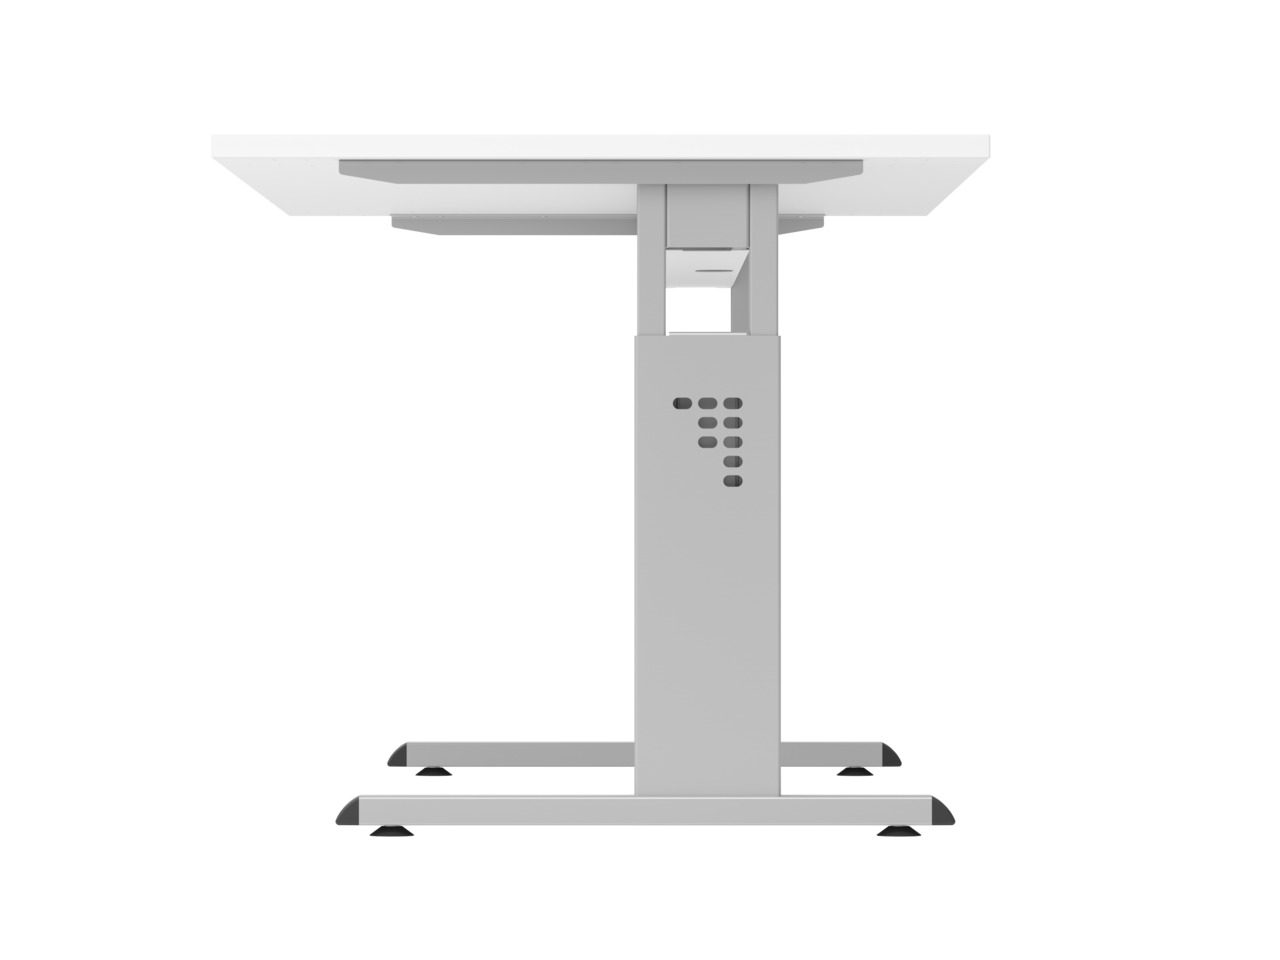 Sitz-Steh-Schreibtisch Juhani | Ahorn | Breite 160cm | Höhe 65-85cm | stufenlos höhenverstellbar | Rechteckform